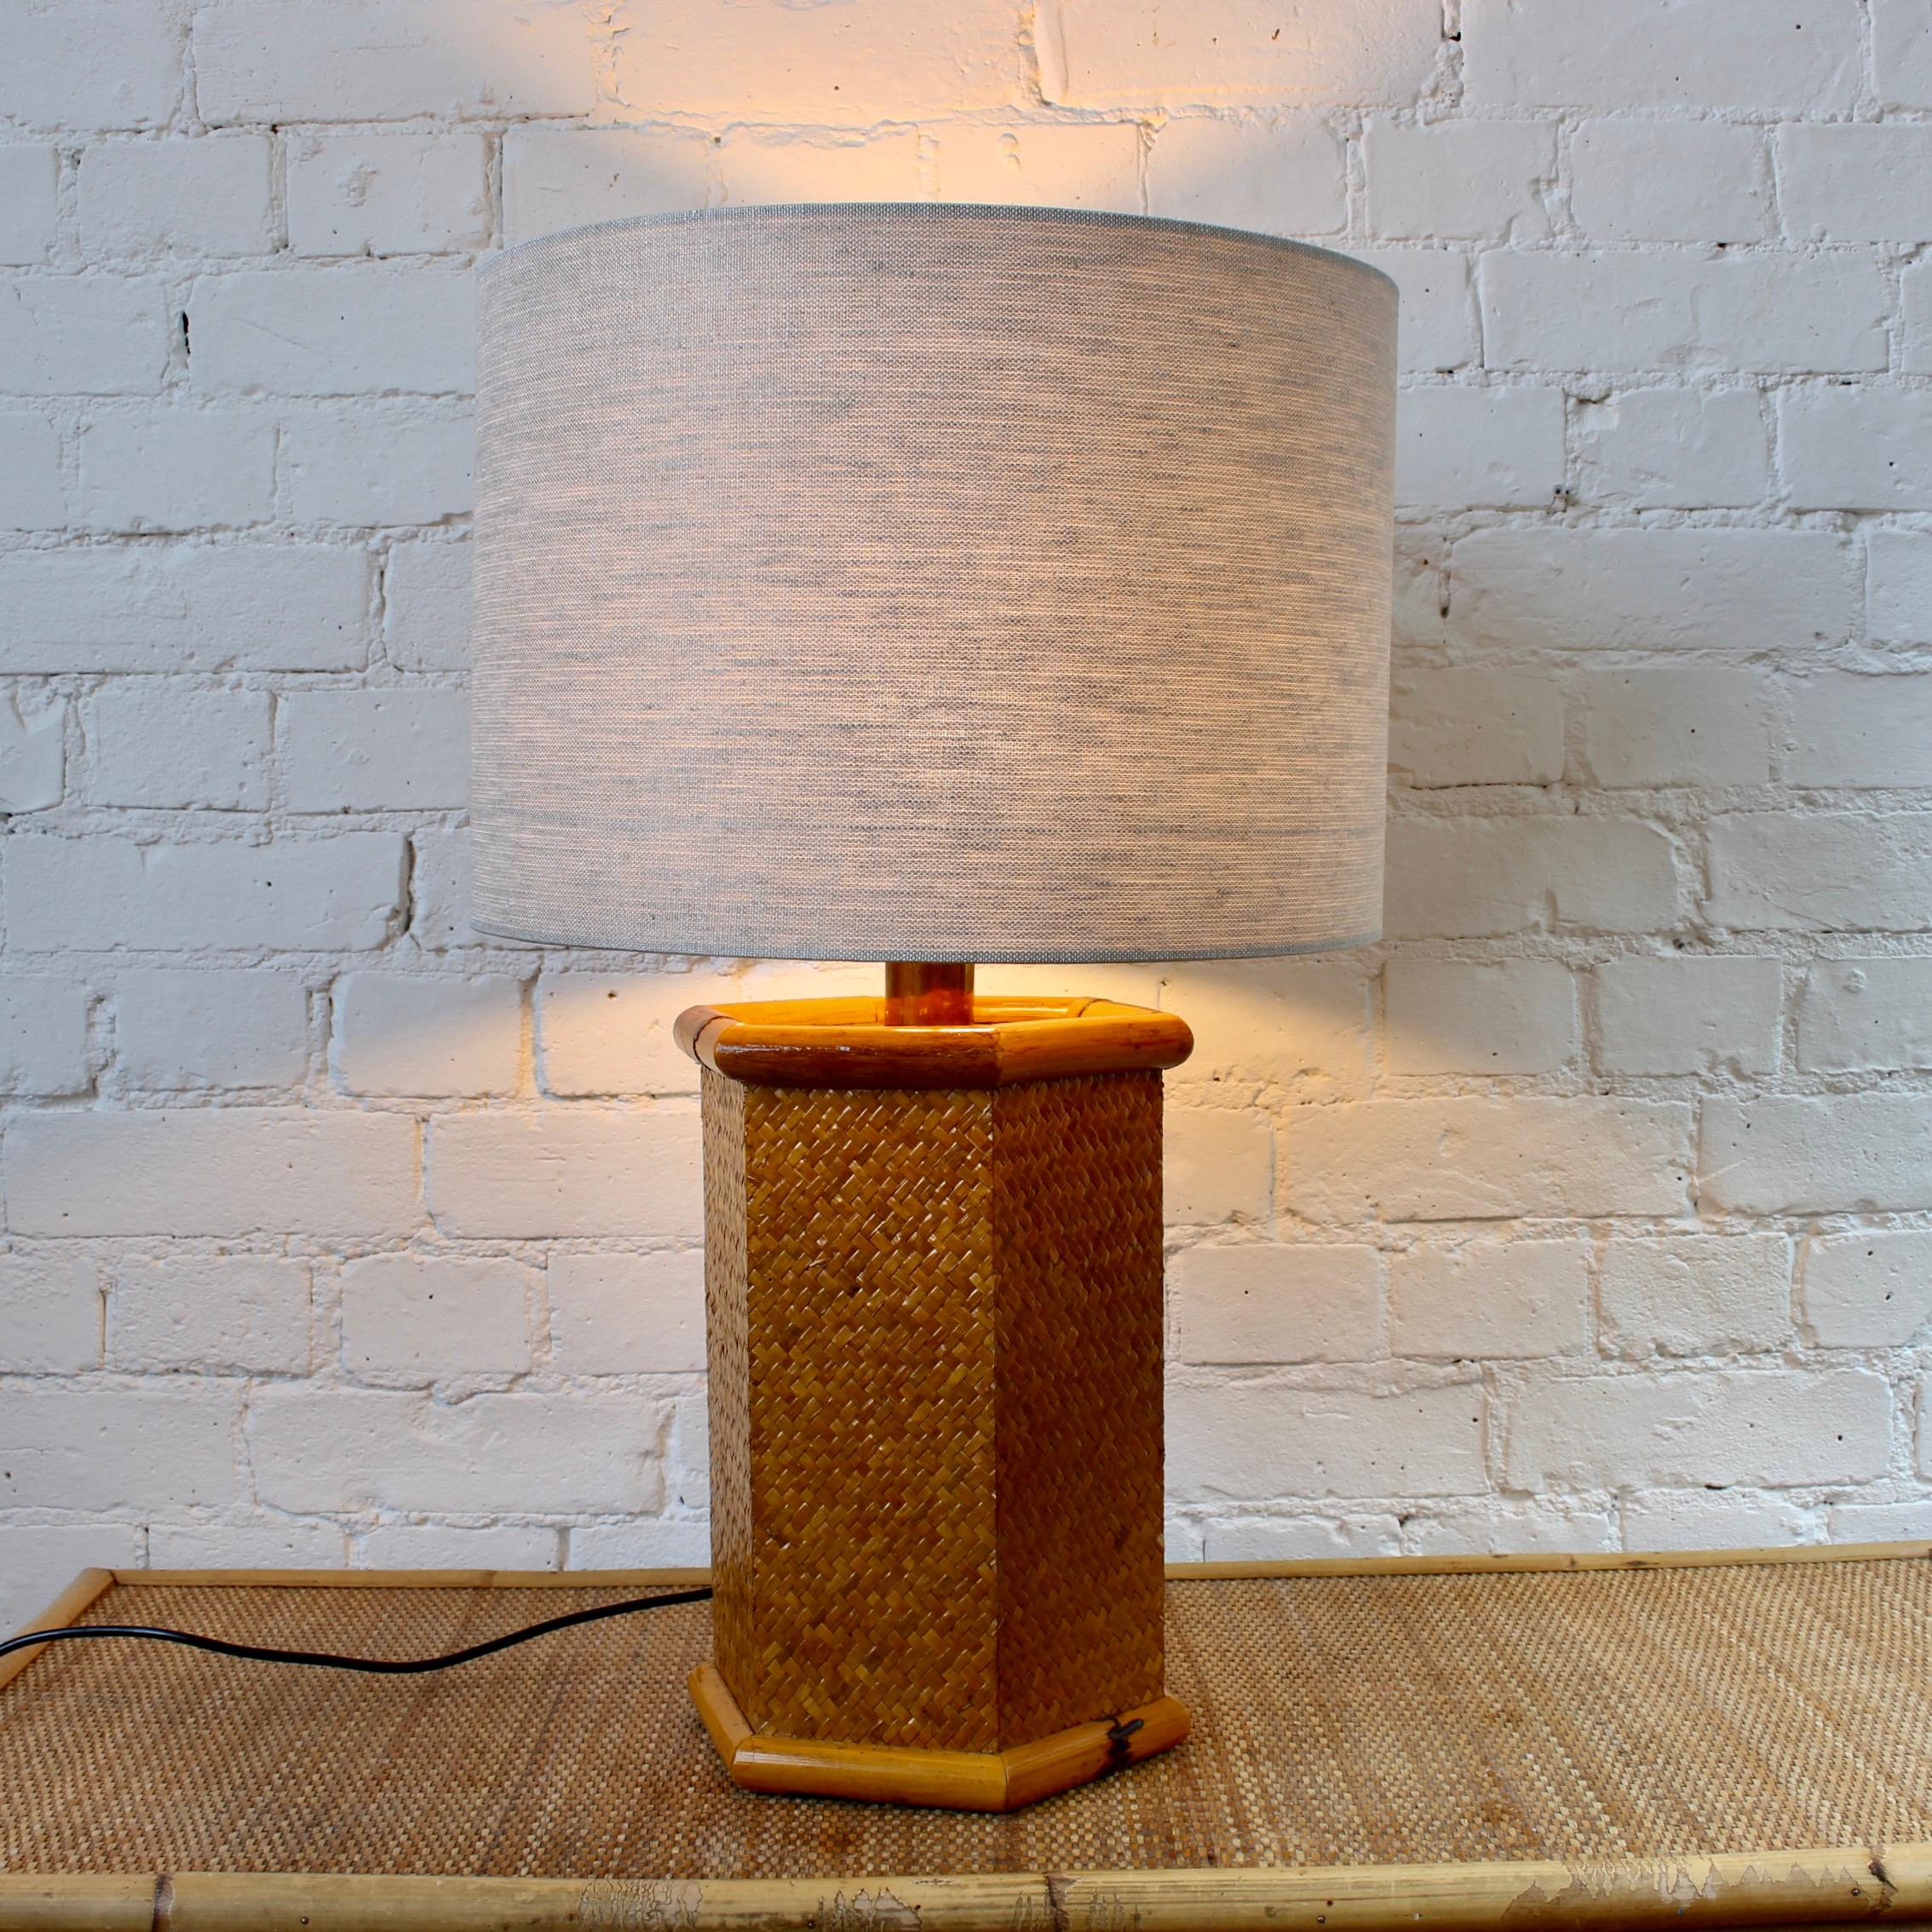 Lampe de table vintage italienne en rotin et bambou (circa 1970). Lampe de table de forme hexagonale avec du rotin tressé au milieu de deux cannes de bambou en haut et en bas, fournissant un support structurel à la pièce. Cette lampe nous transporte